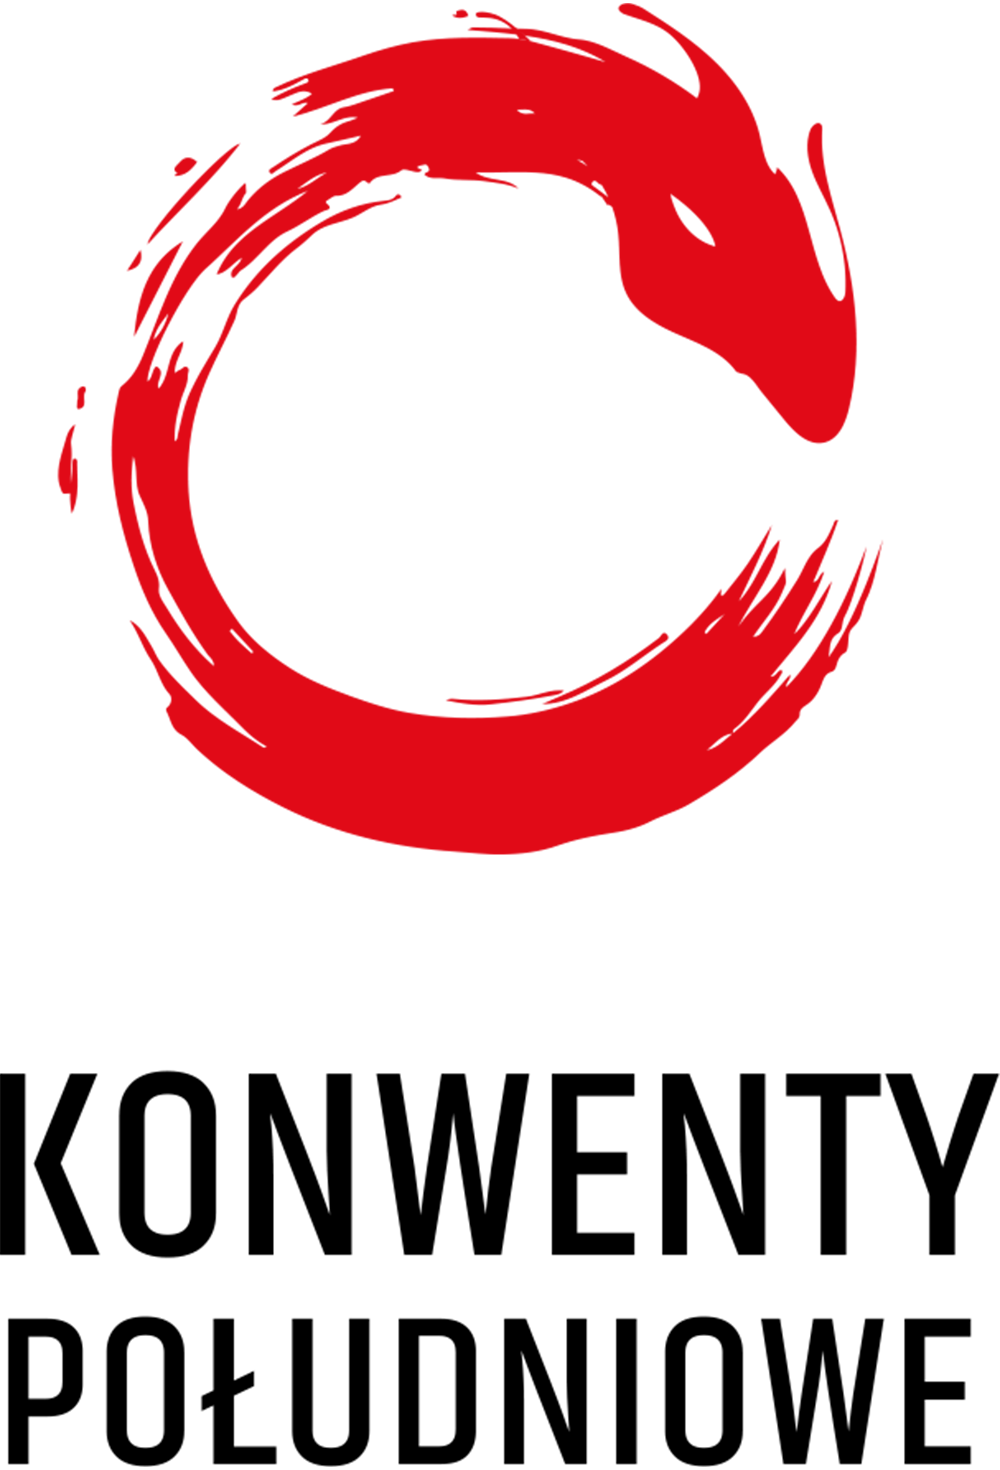 Konwenty Południowe (logo)